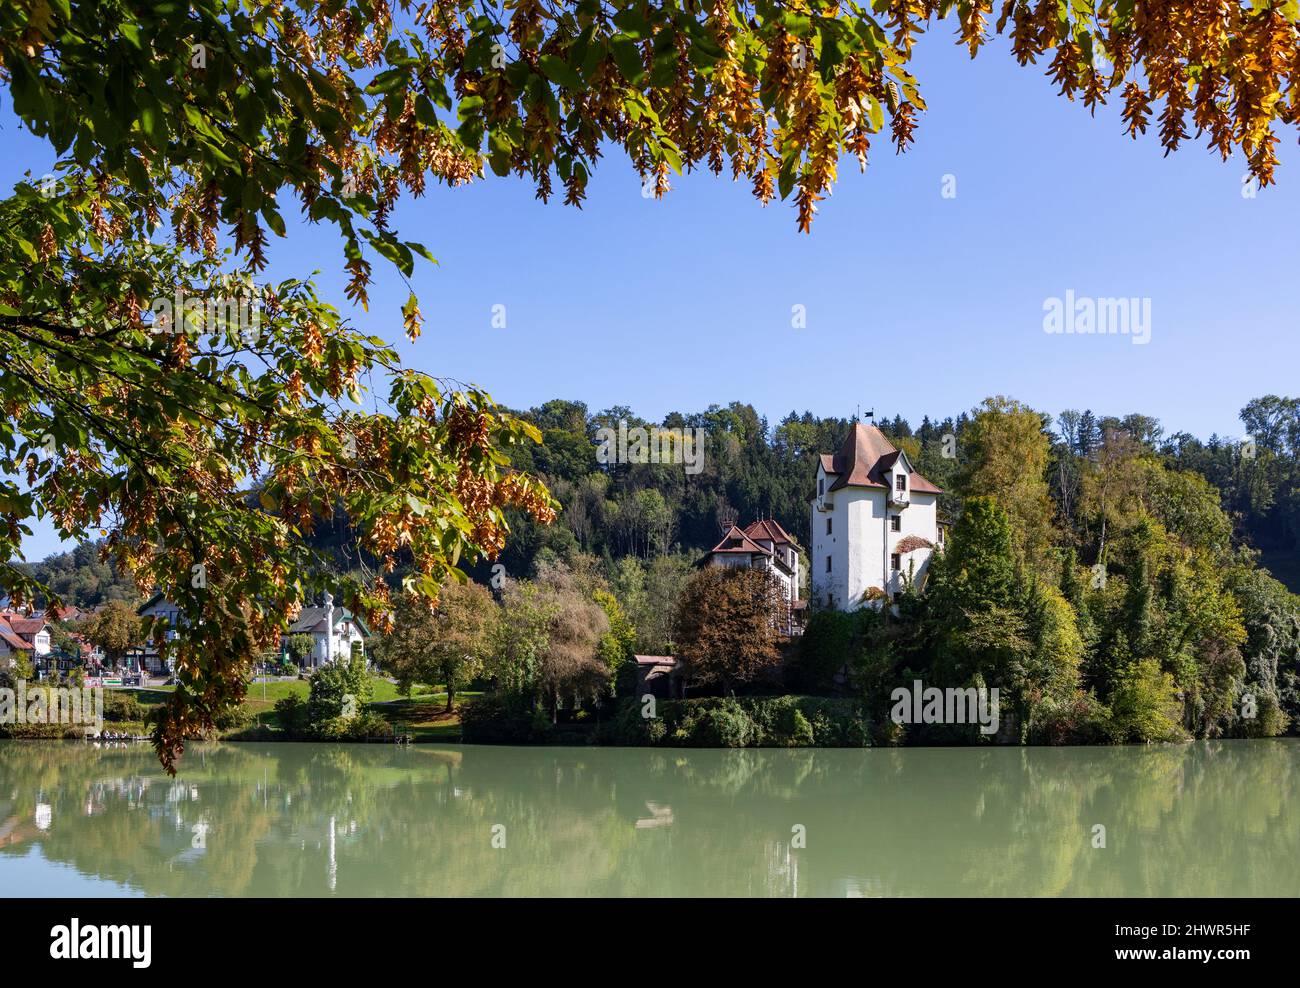 Austria, Upper Austria, Wernstein am Inn, Burg Wernstein standing on bank of river Inn in summer Stock Photo